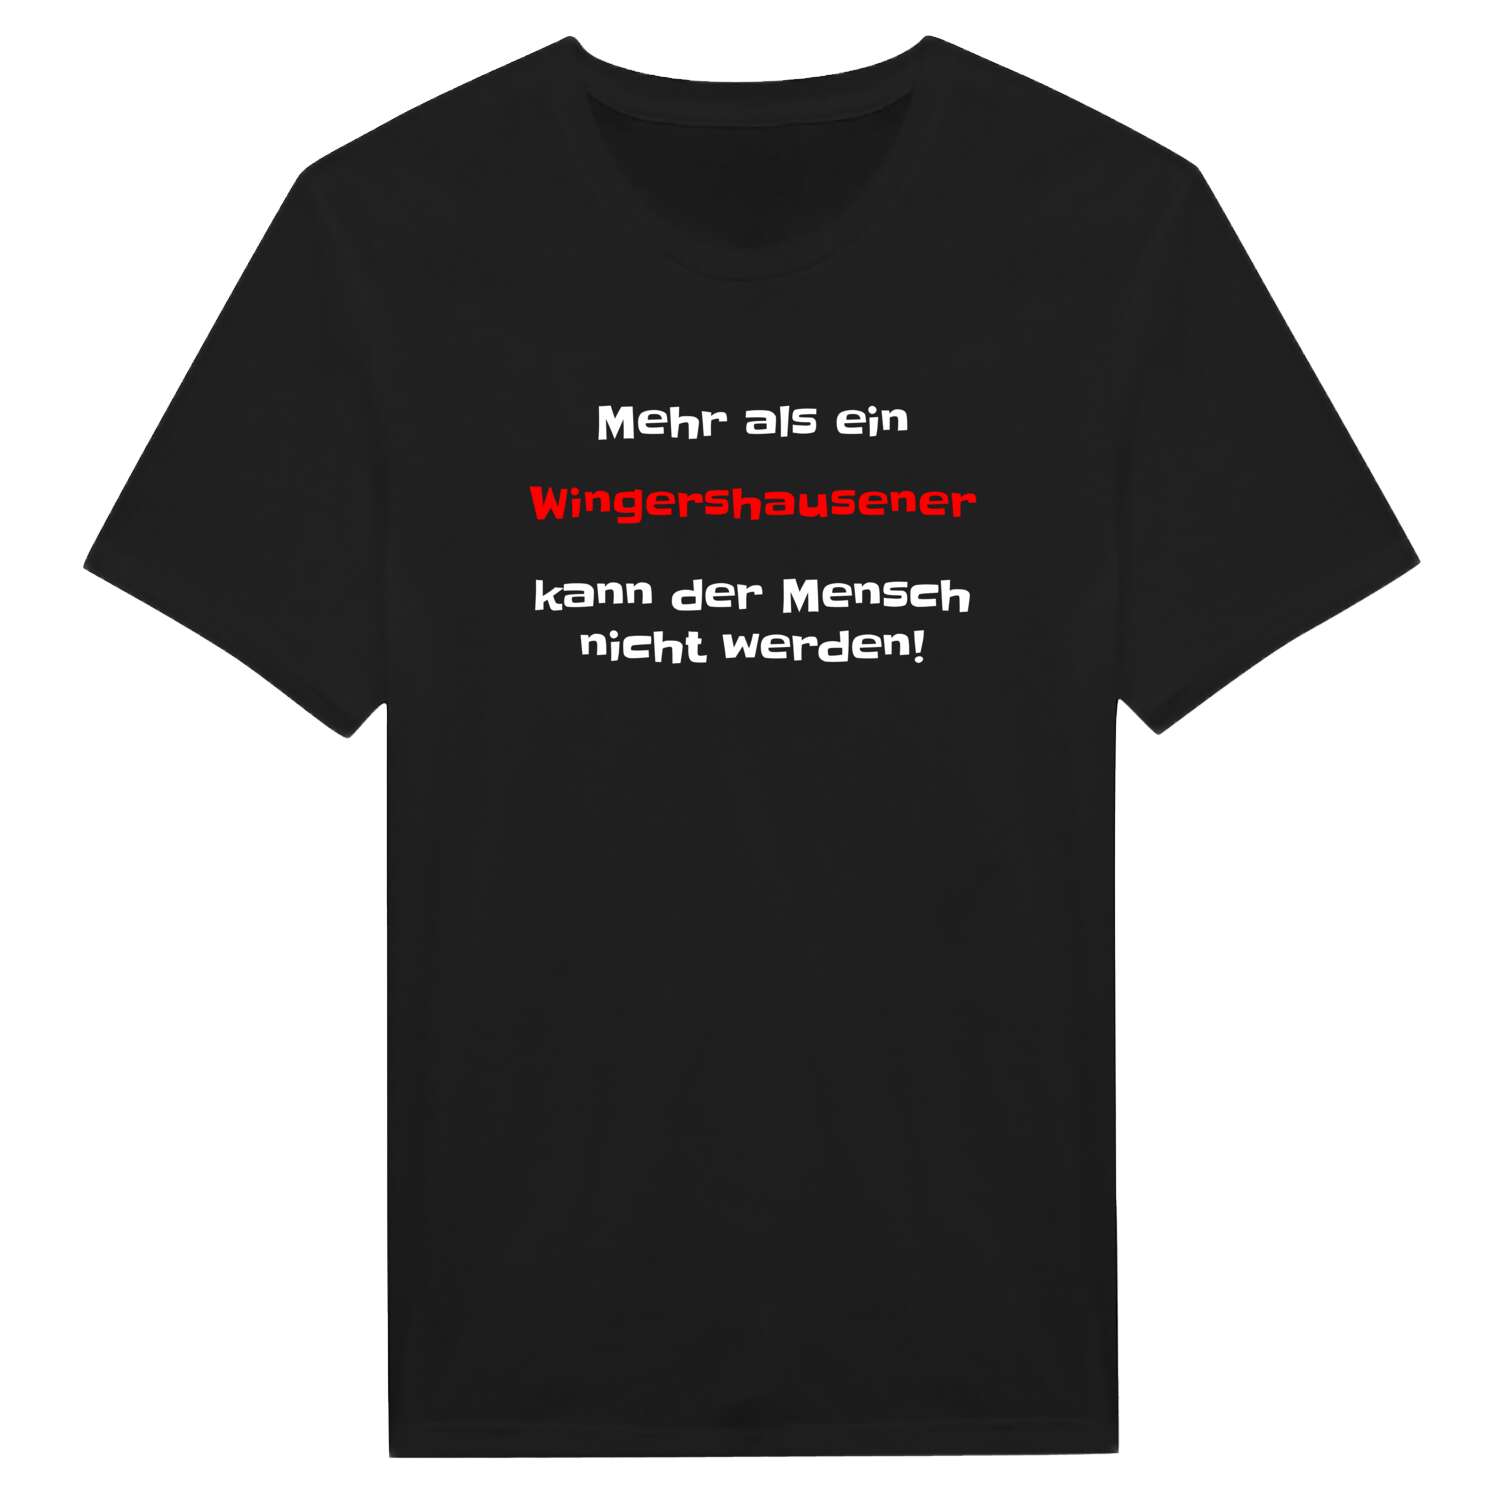 Wingershausen T-Shirt »Mehr als ein«